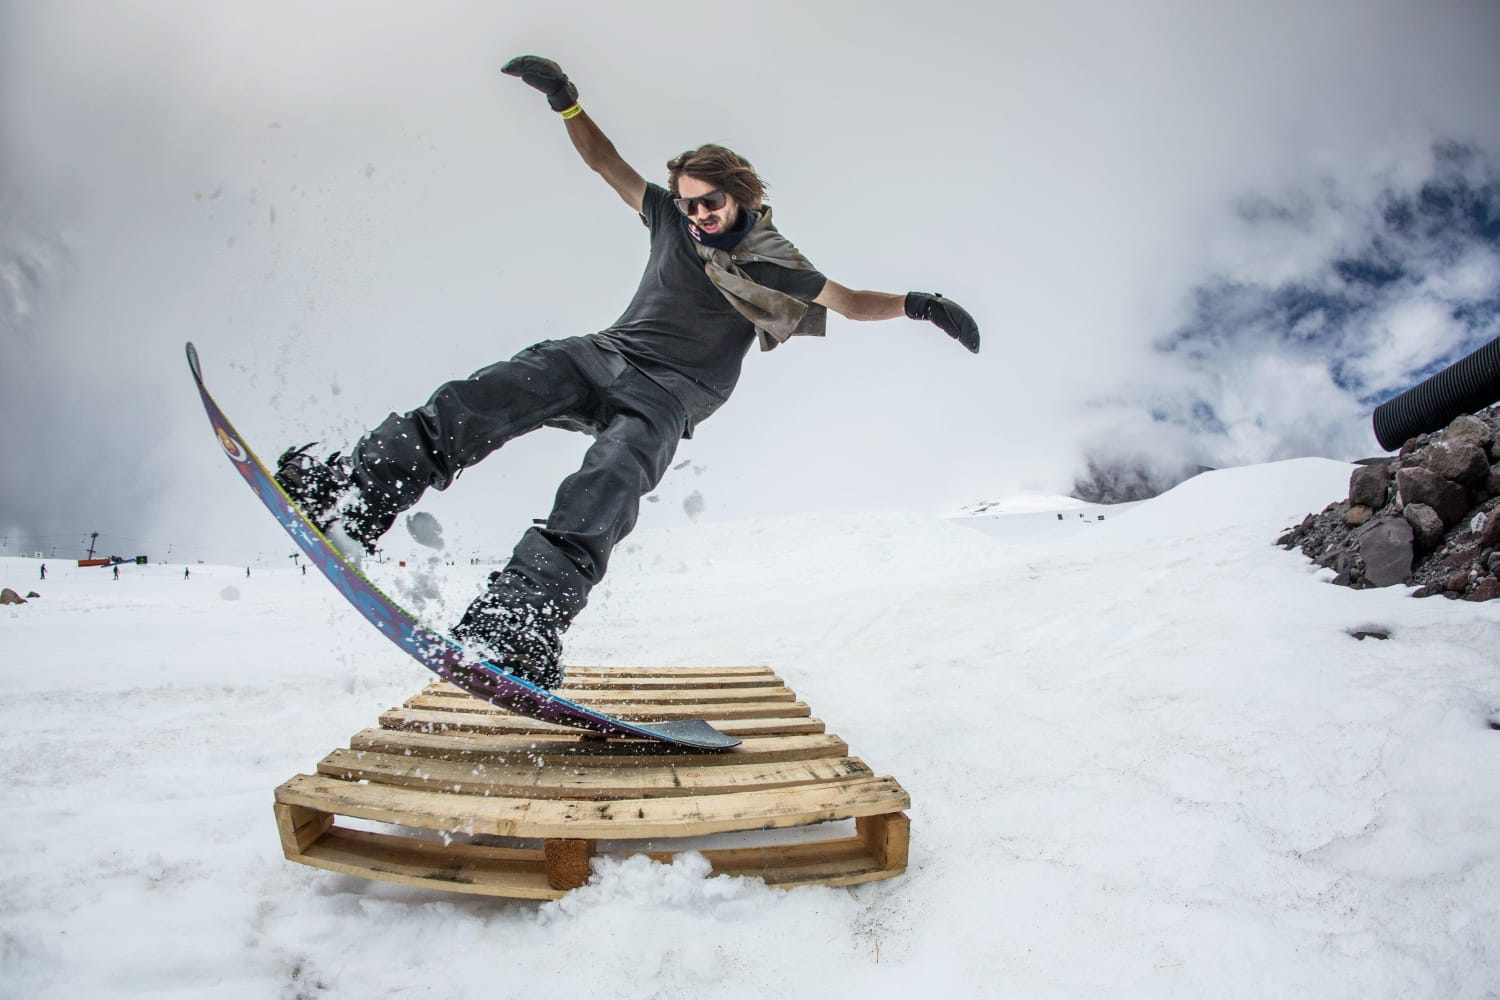 Northeast Petition Turn down Snowboard kaufen - Tipps: So findest du DEIN Board!